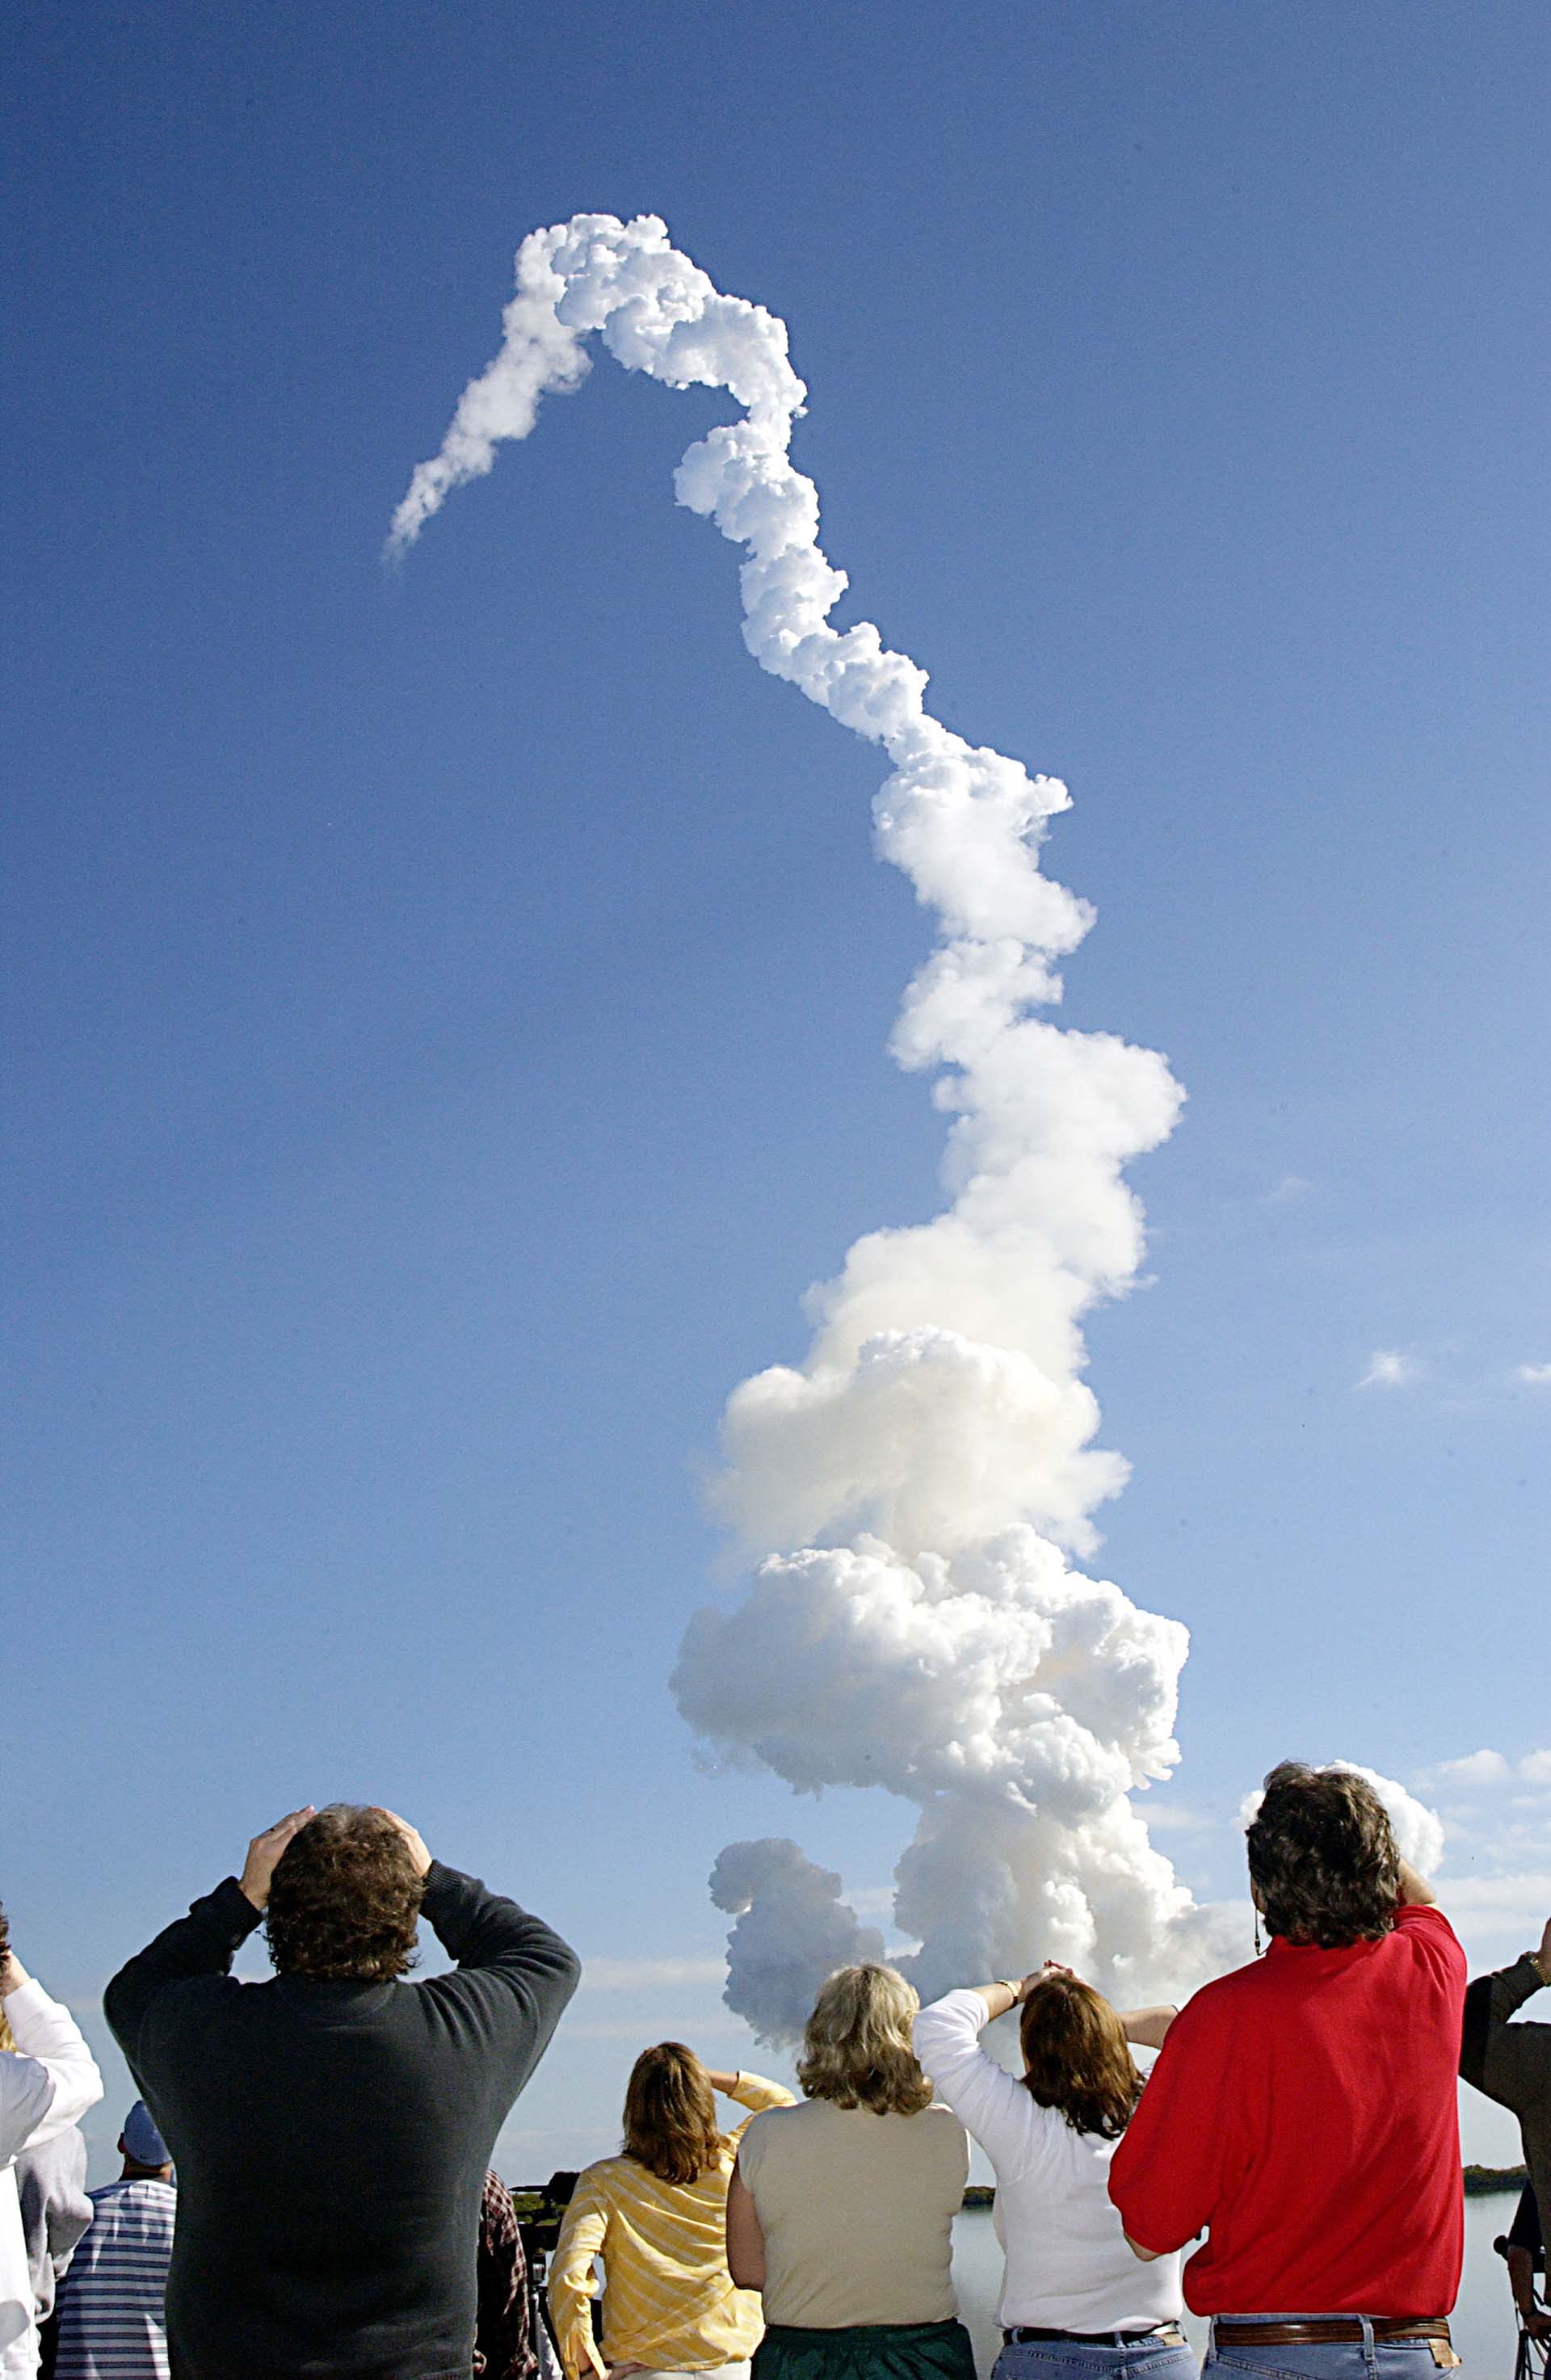 El público que esperaba el arribo observa consternado el momento de la explosión del Columbia (Photo by NASA/Getty Images)